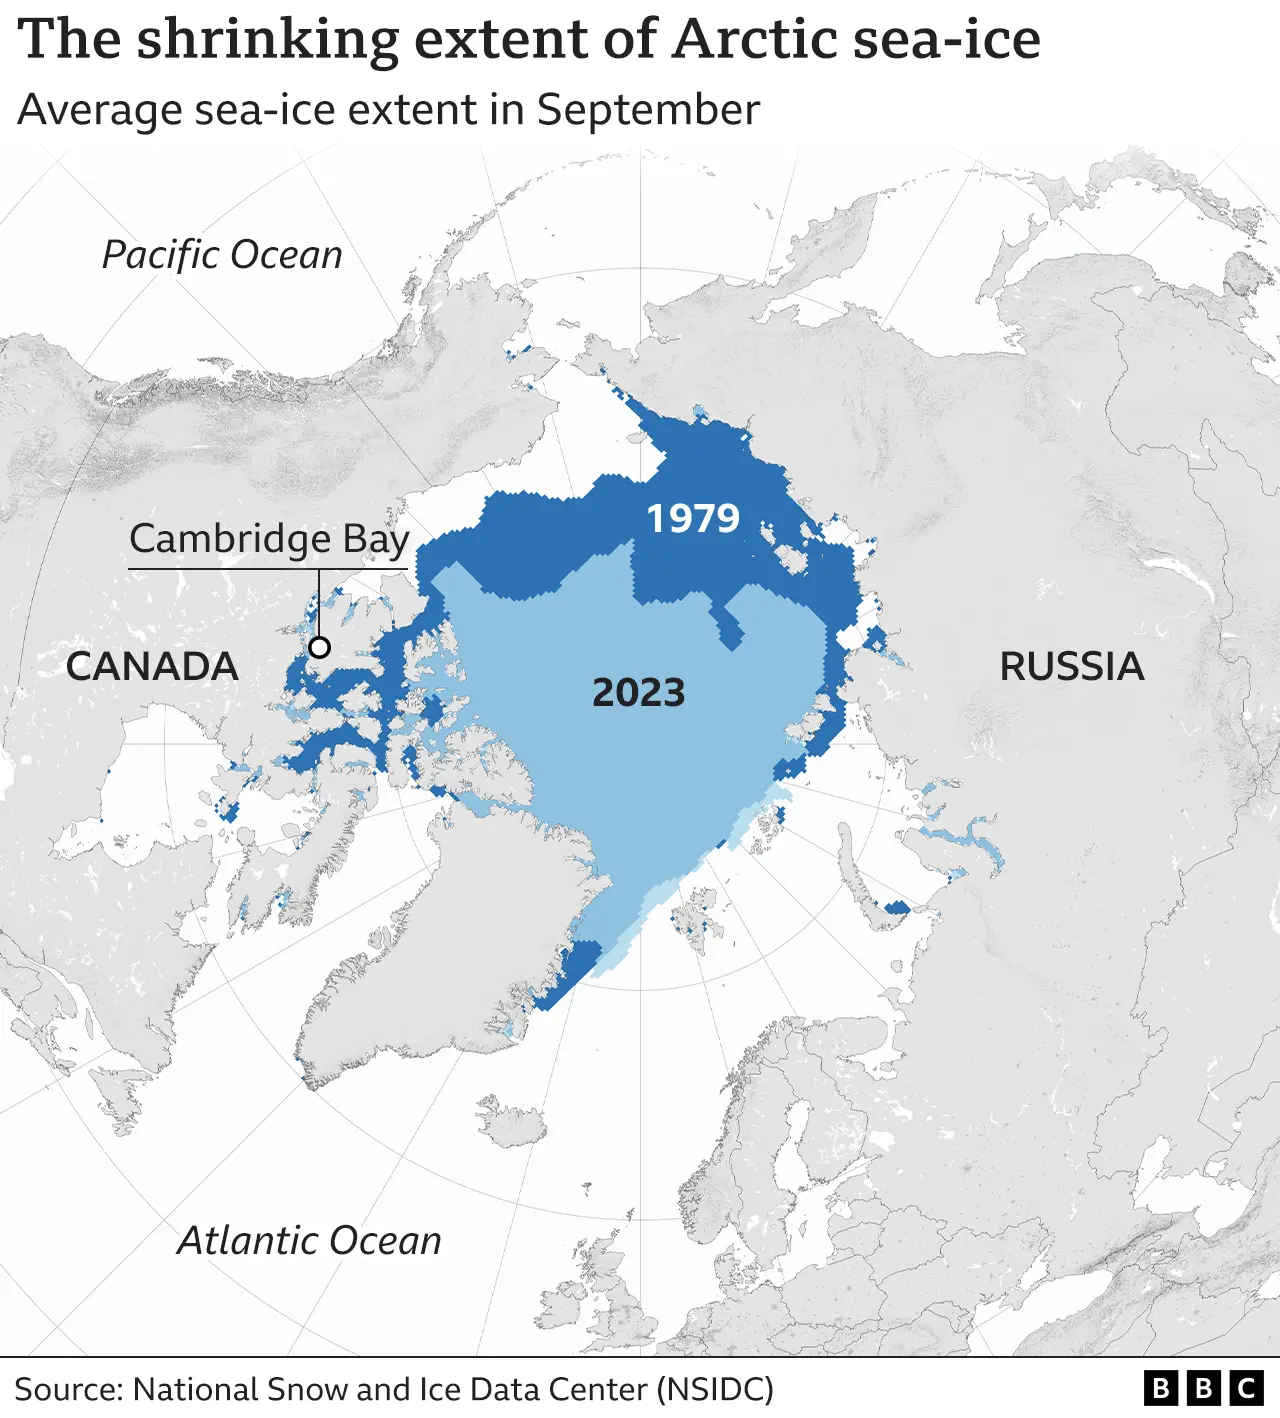 Χάρτης που δείχνει την έκταση του θαλάσσιου πάγου της Αρκτικής τον Σεπτέμβριο του 1979 έναντι του Σεπτεμβρίου 2023. Πολύ λιγότερος θαλάσσιος πάγος υπάρχει το 2023, ειδικά στα βορειοανατολικά της Ρωσίας.